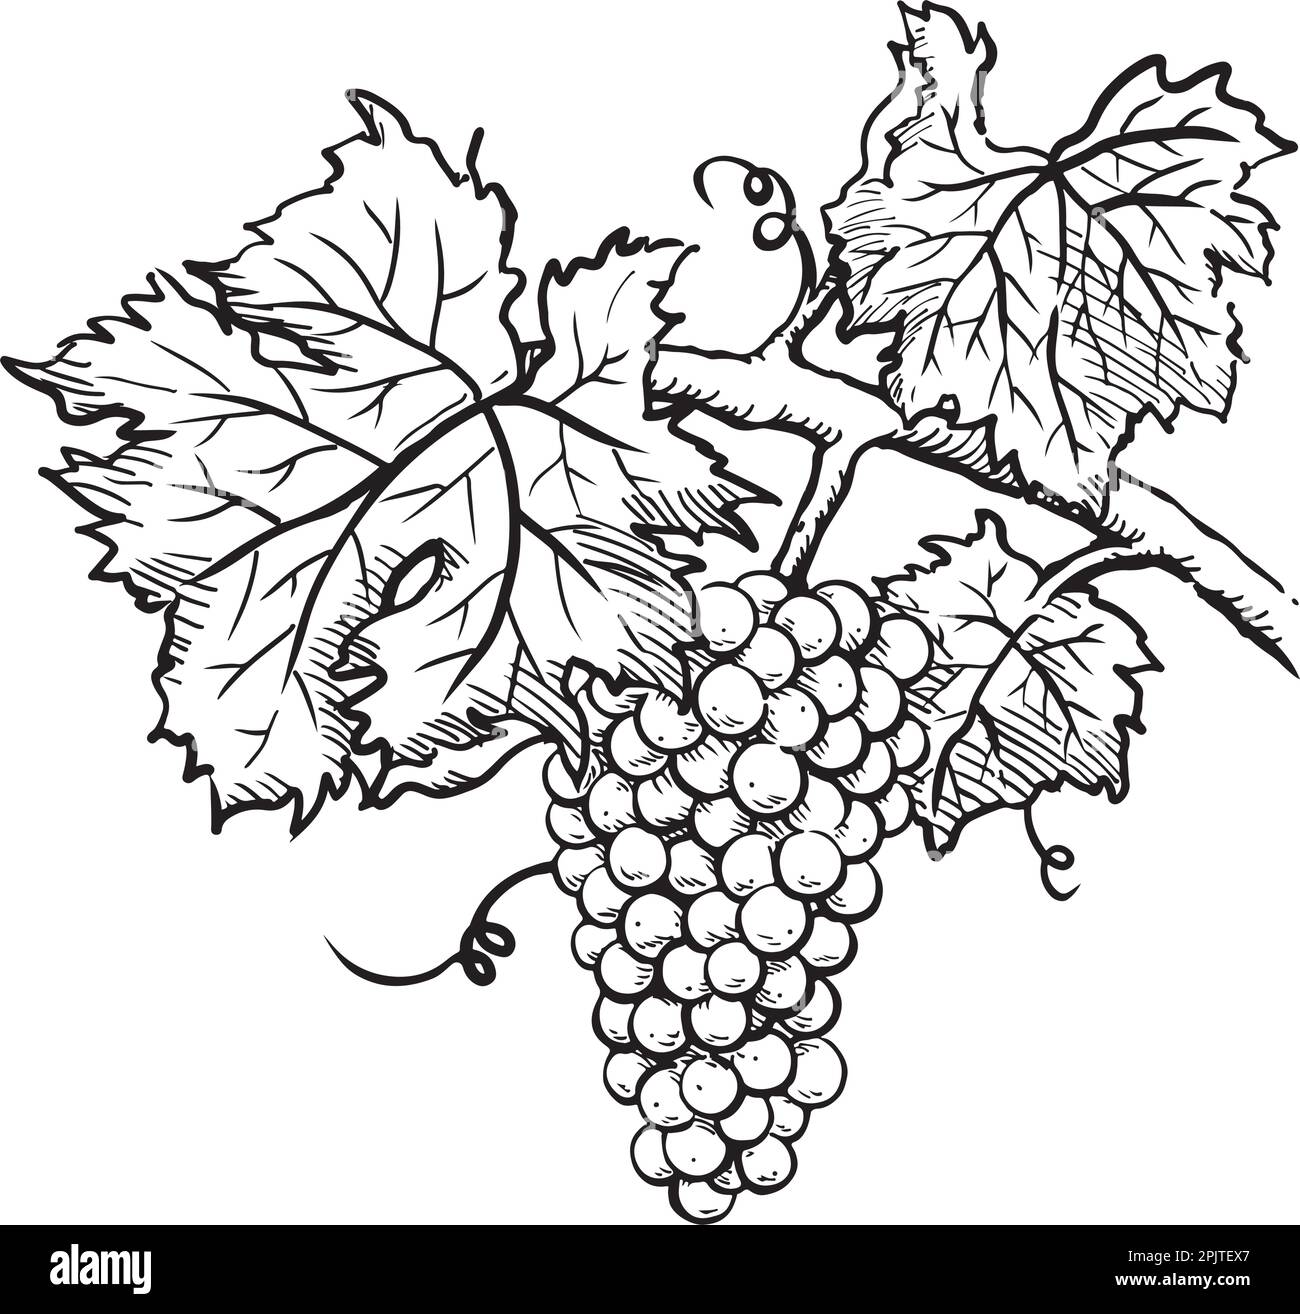 Croquis de raisins dessinés à la main avec des feuilles et de la vigne. Illustration vectorielle Illustration de Vecteur